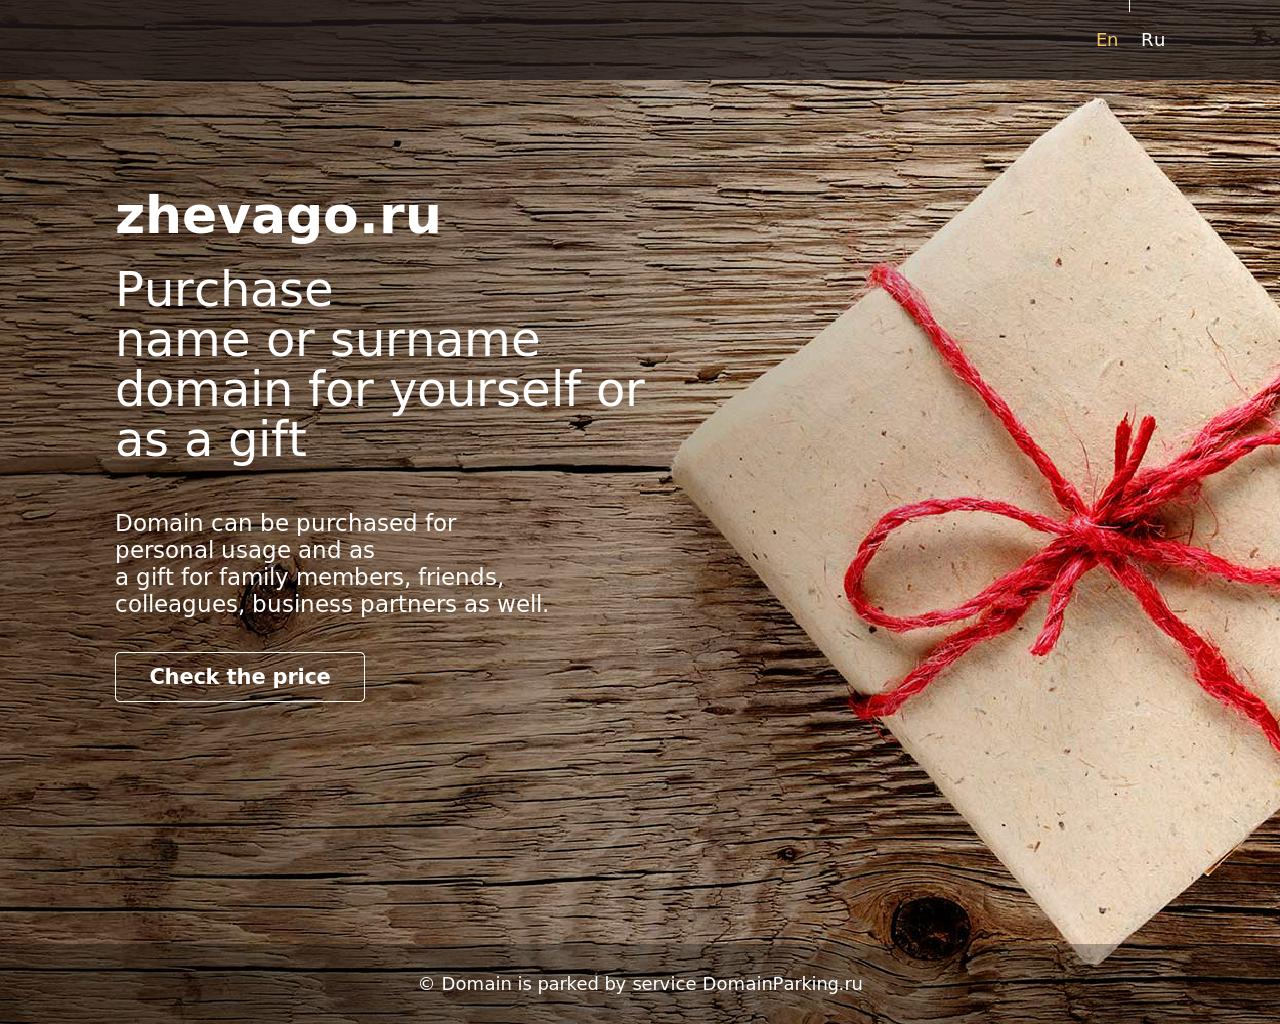 Изображение сайта zhevago.ru в разрешении 1280x1024